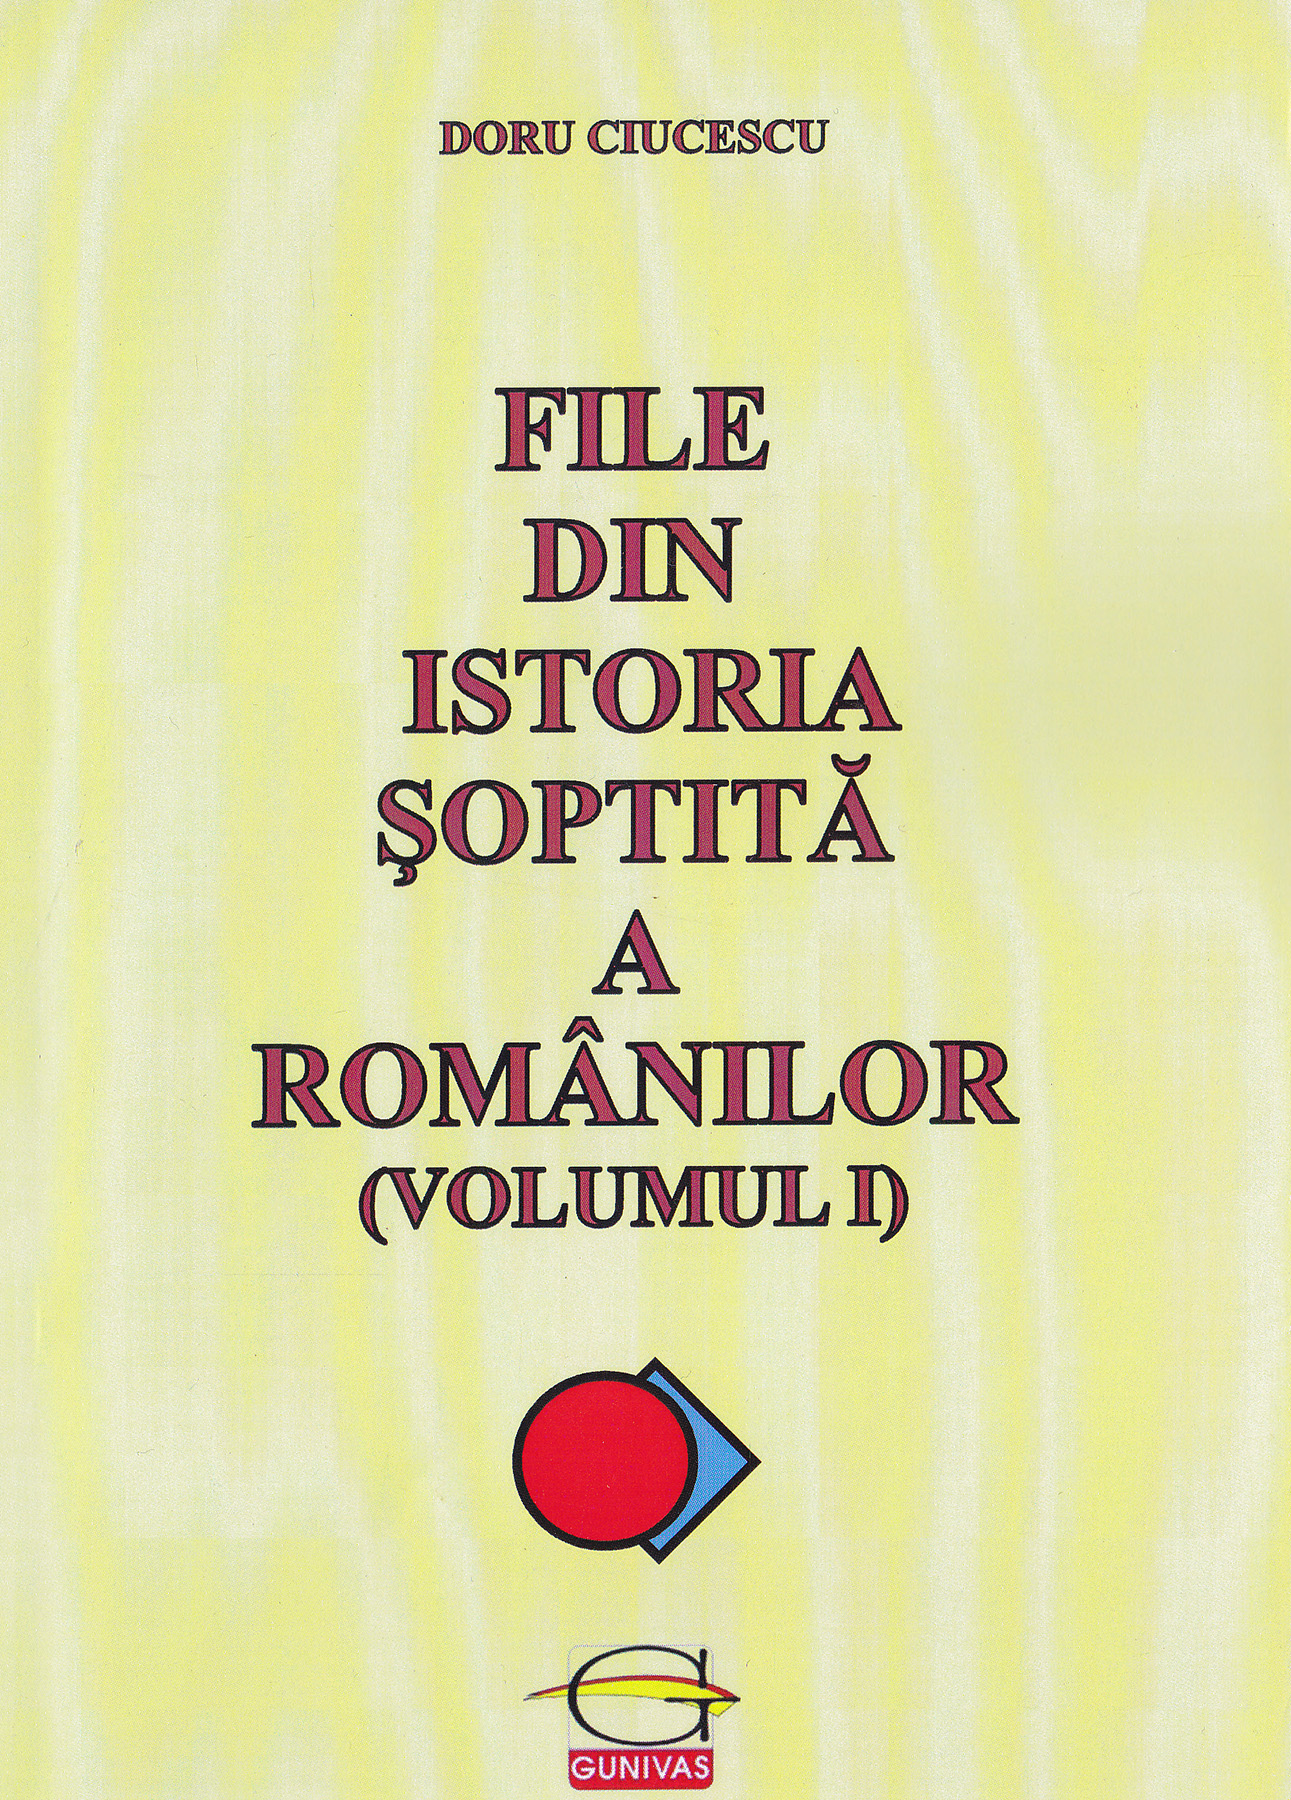 File din istoria soptita a romanilor (Volumul 1) | Doru Ciucescu carturesti.ro imagine 2022